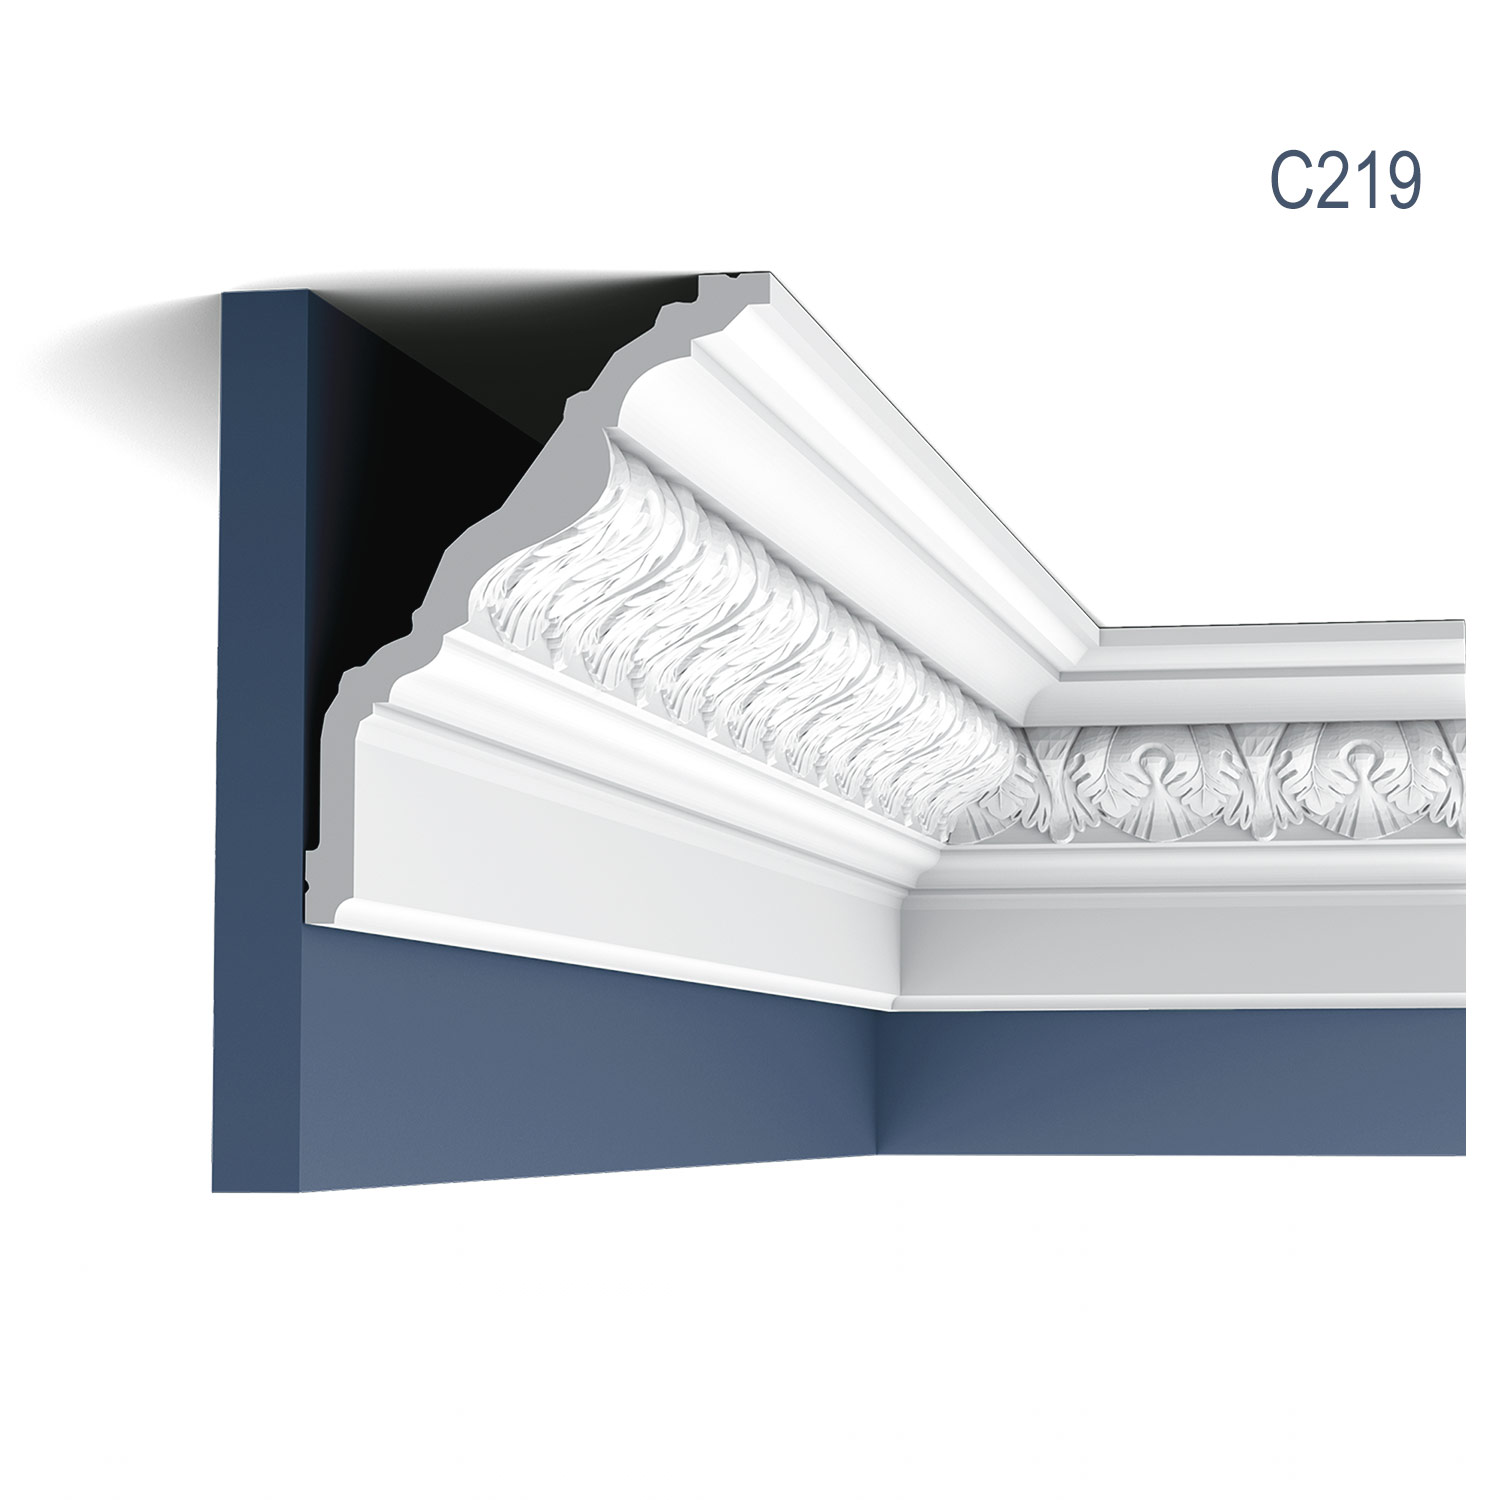 Cornisa C219, profil decorativ, pentru tavan, alba, vopsibila, rigida, calitate excelenta, Belgia, din Poliuretan rigid, L 200 x H 13 x L 17,6 cm